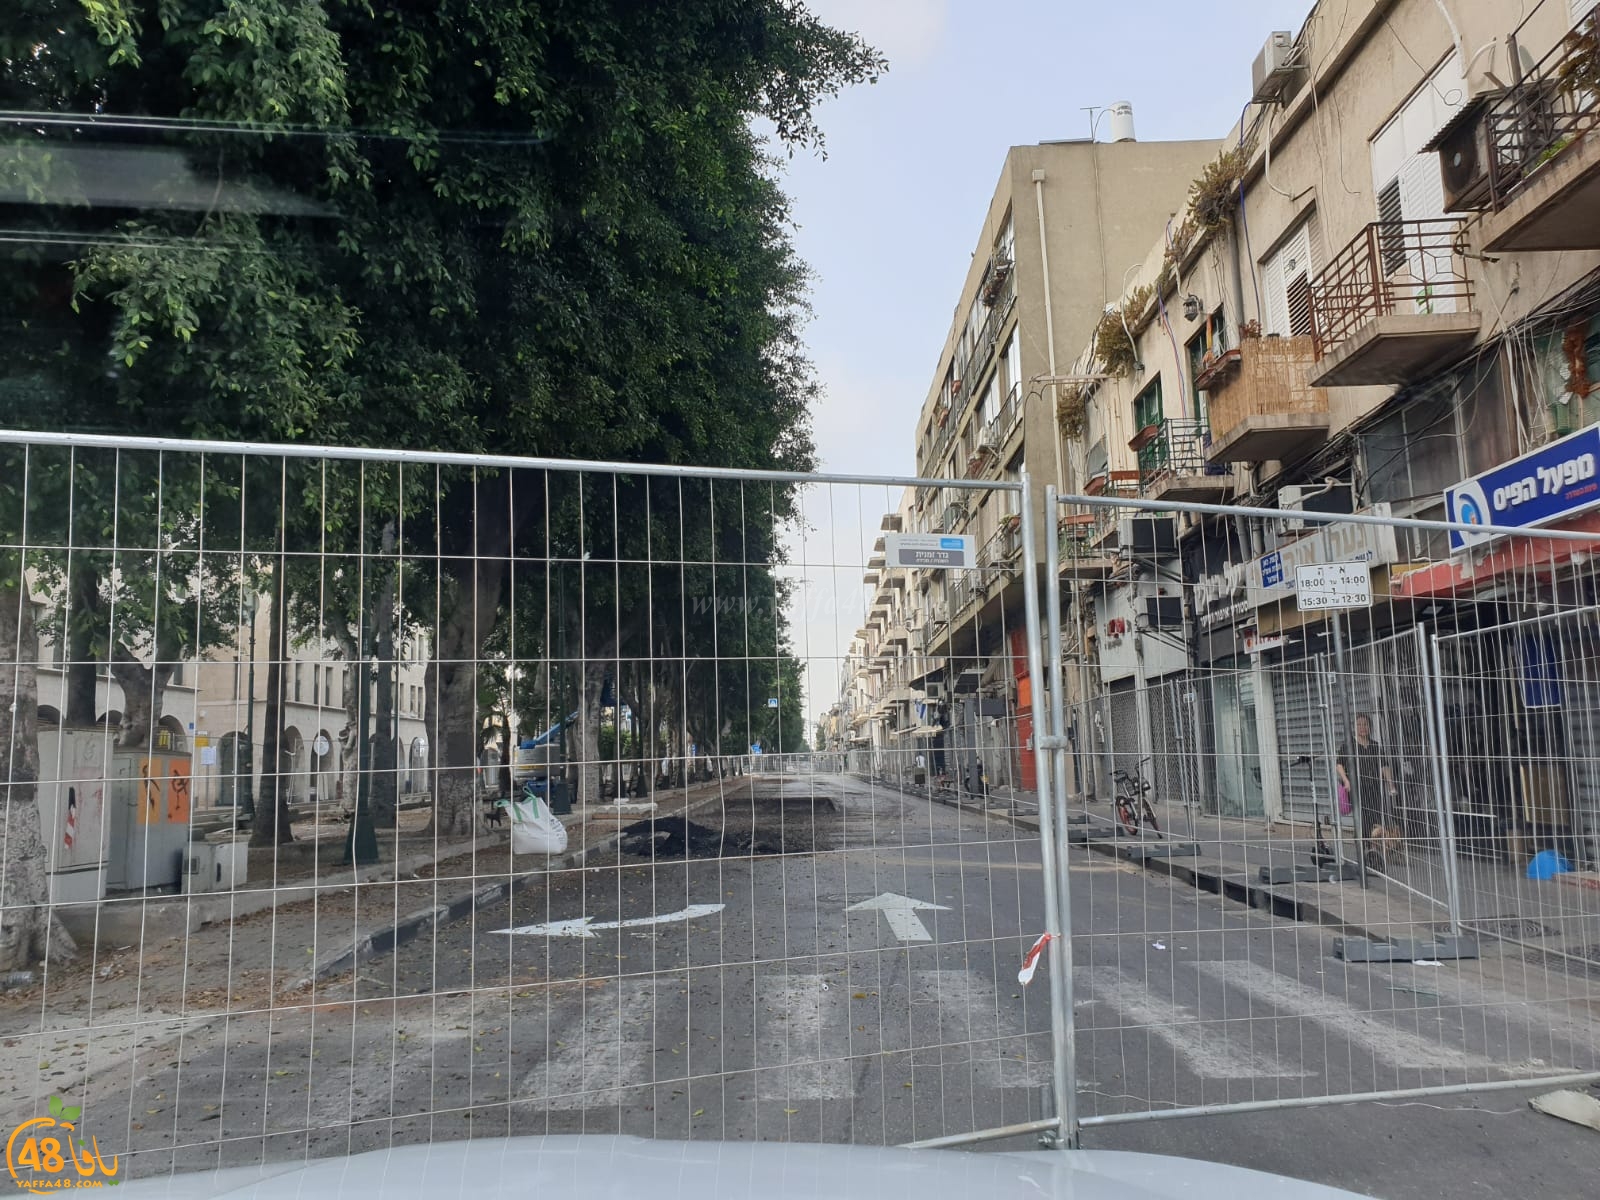 بالصور: إغلاق أحد مسارات شارع شديروت يروشلايم بيافا تمهيداً لاغلاقه بالكامل 